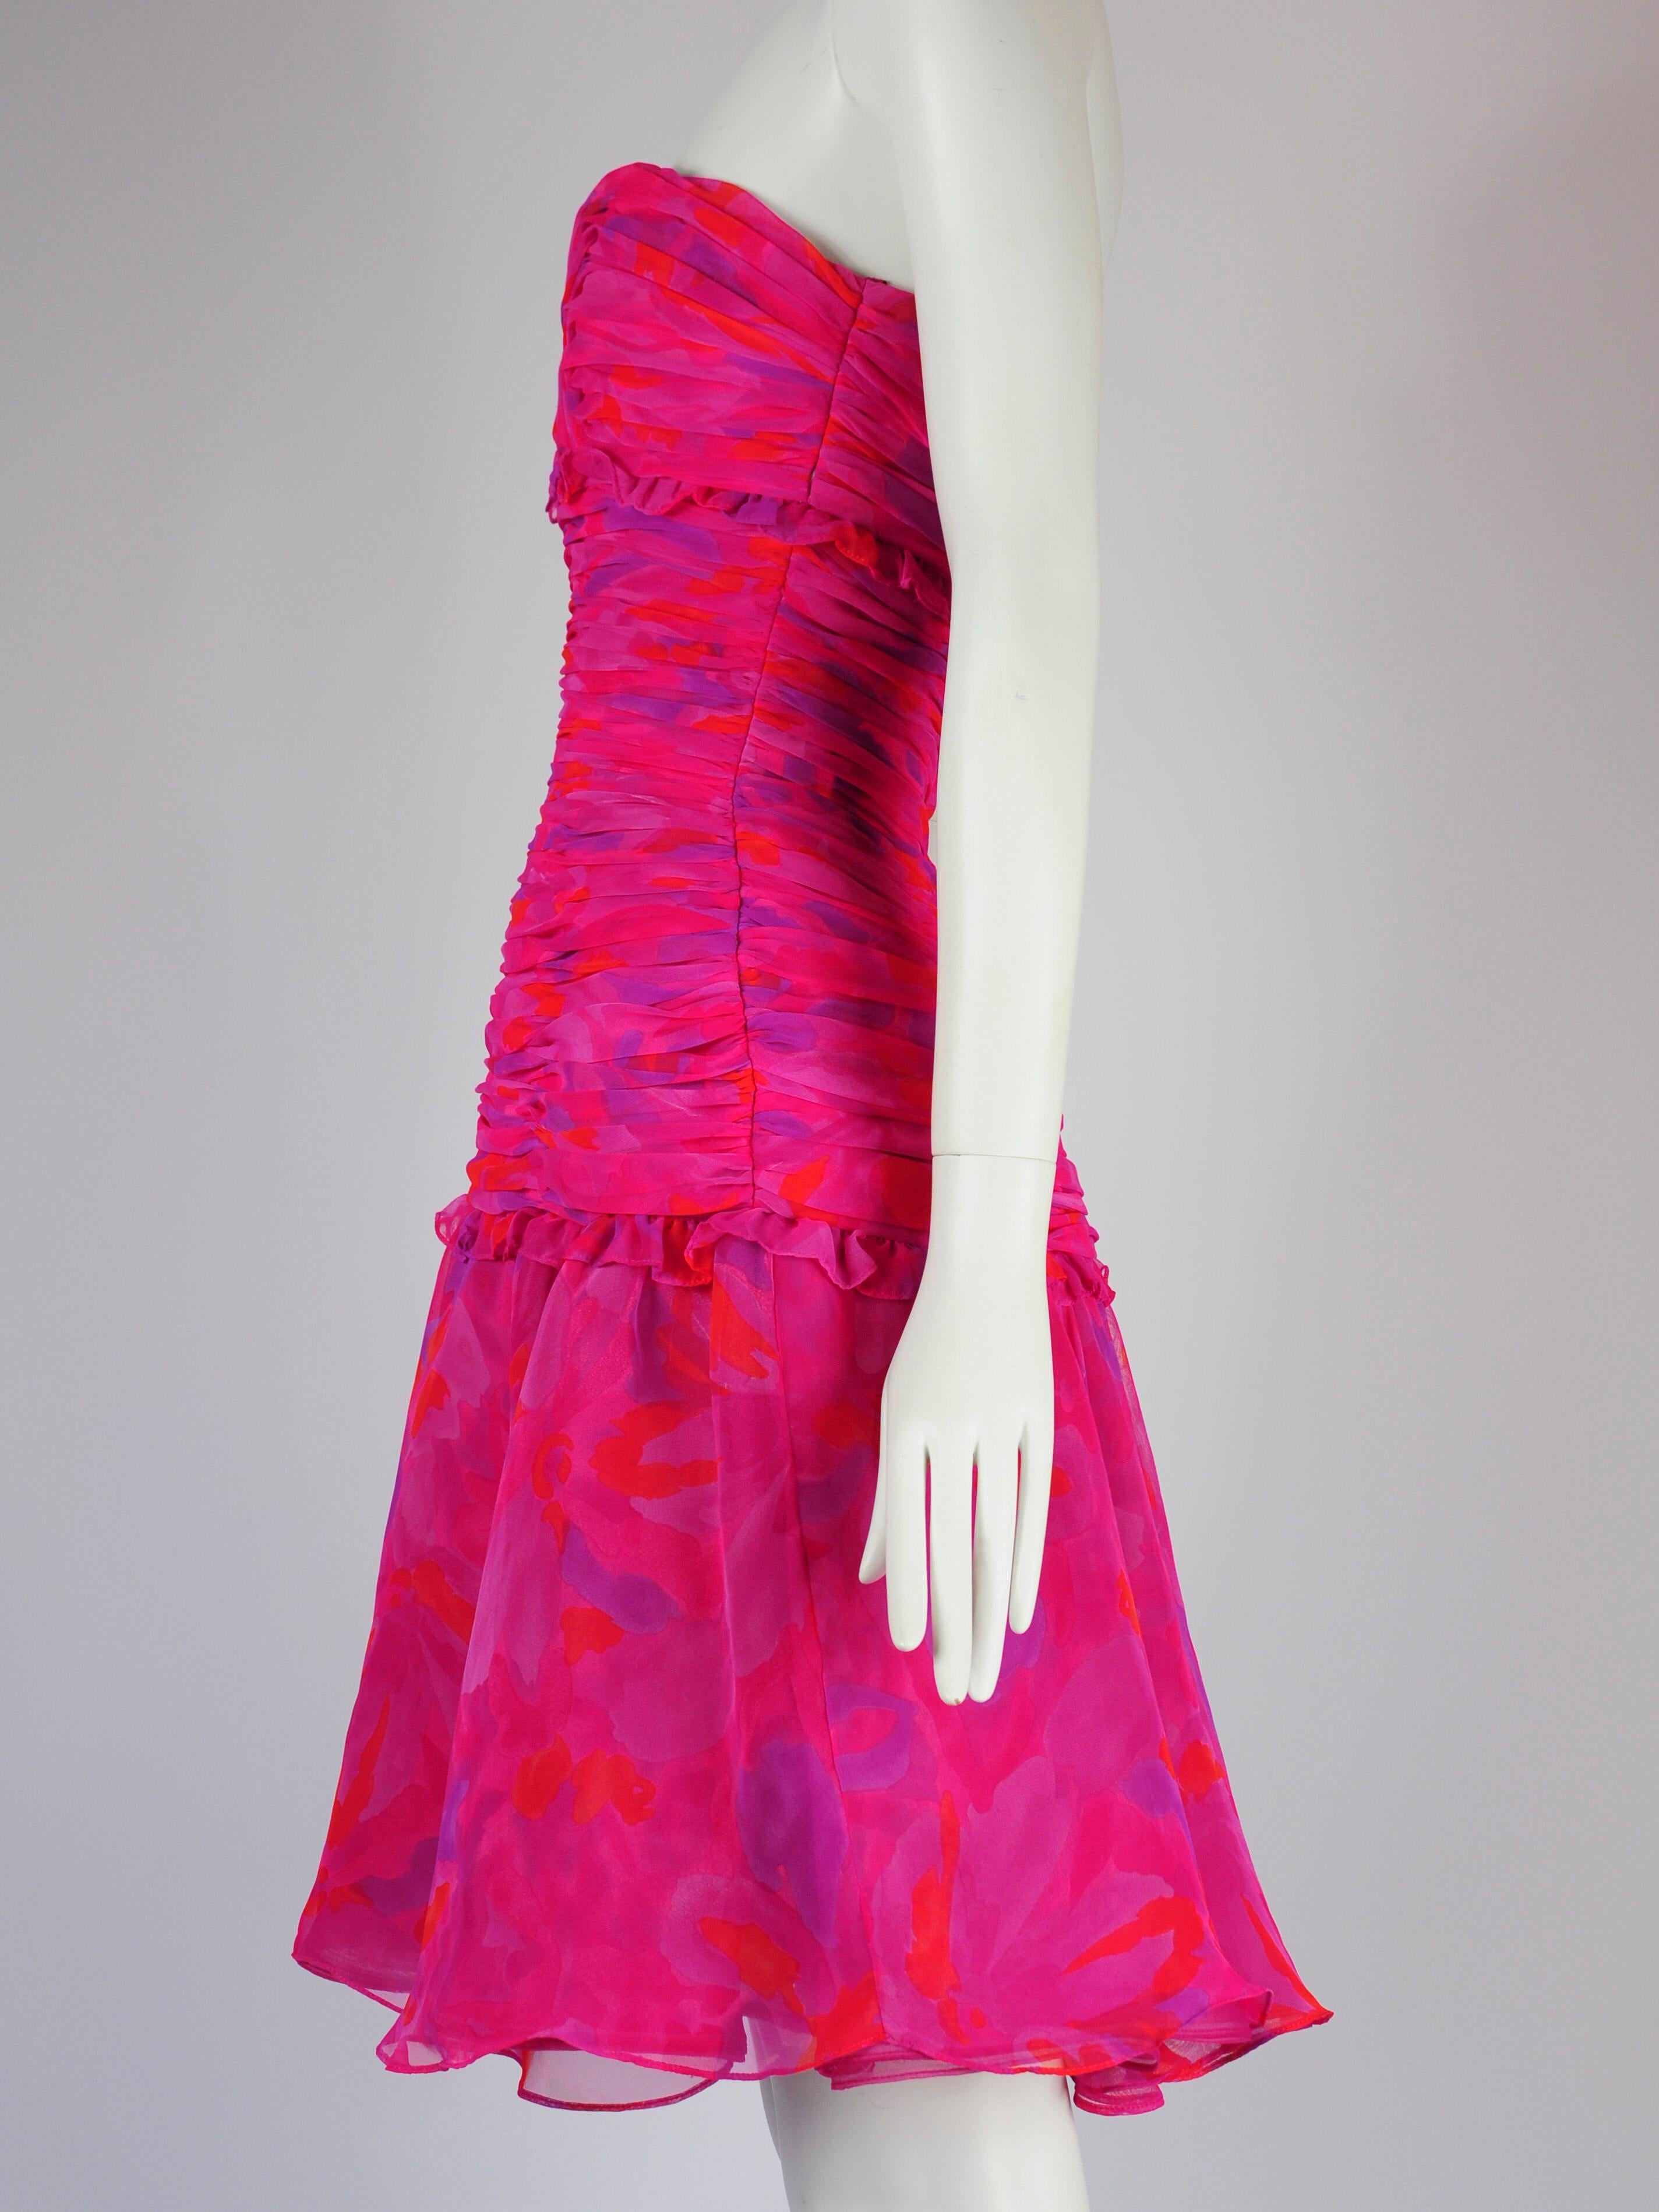 Robe de cocktail Victor Costa for Saks Fifth Avenue en rose fuchsia avec imprimé aquarelle abstrait. Cette robe Victor Costa présente un corsage froncé, une taille tombante et une jupe superposée. Elle conviendrait parfaitement comme robe d'invité